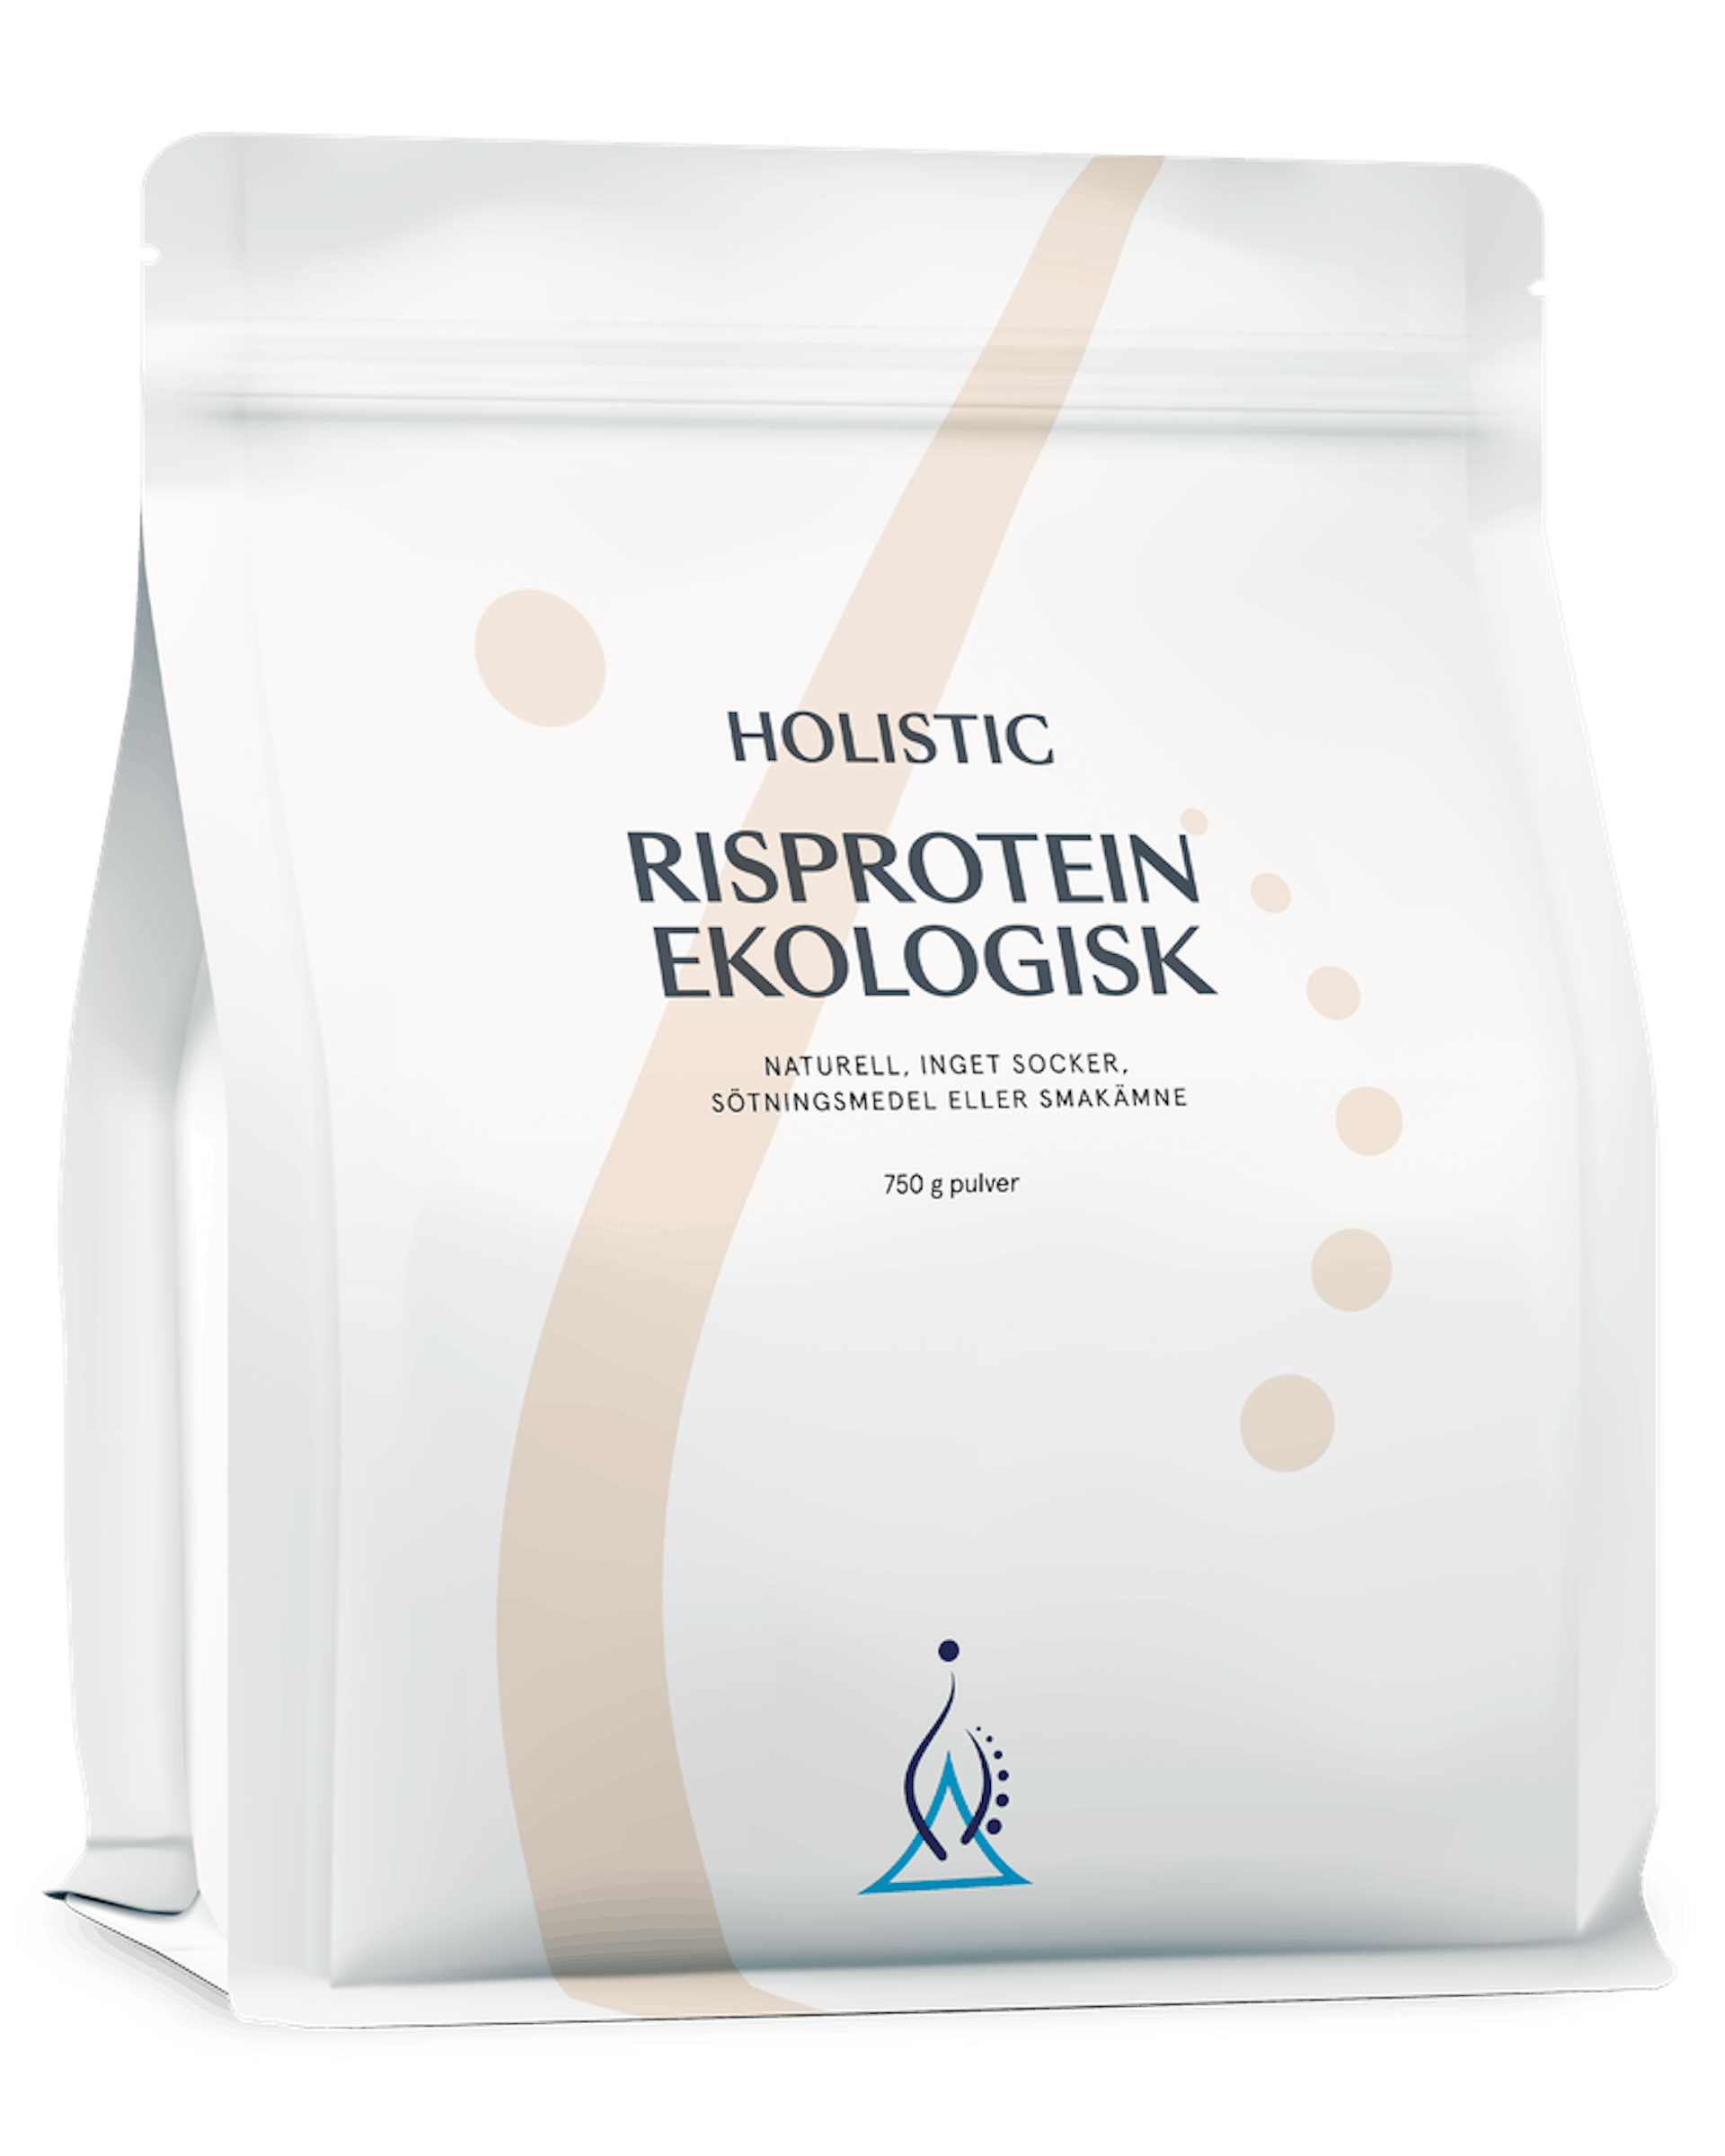 Risprotein ekologisk, 750 g (1 av 1)